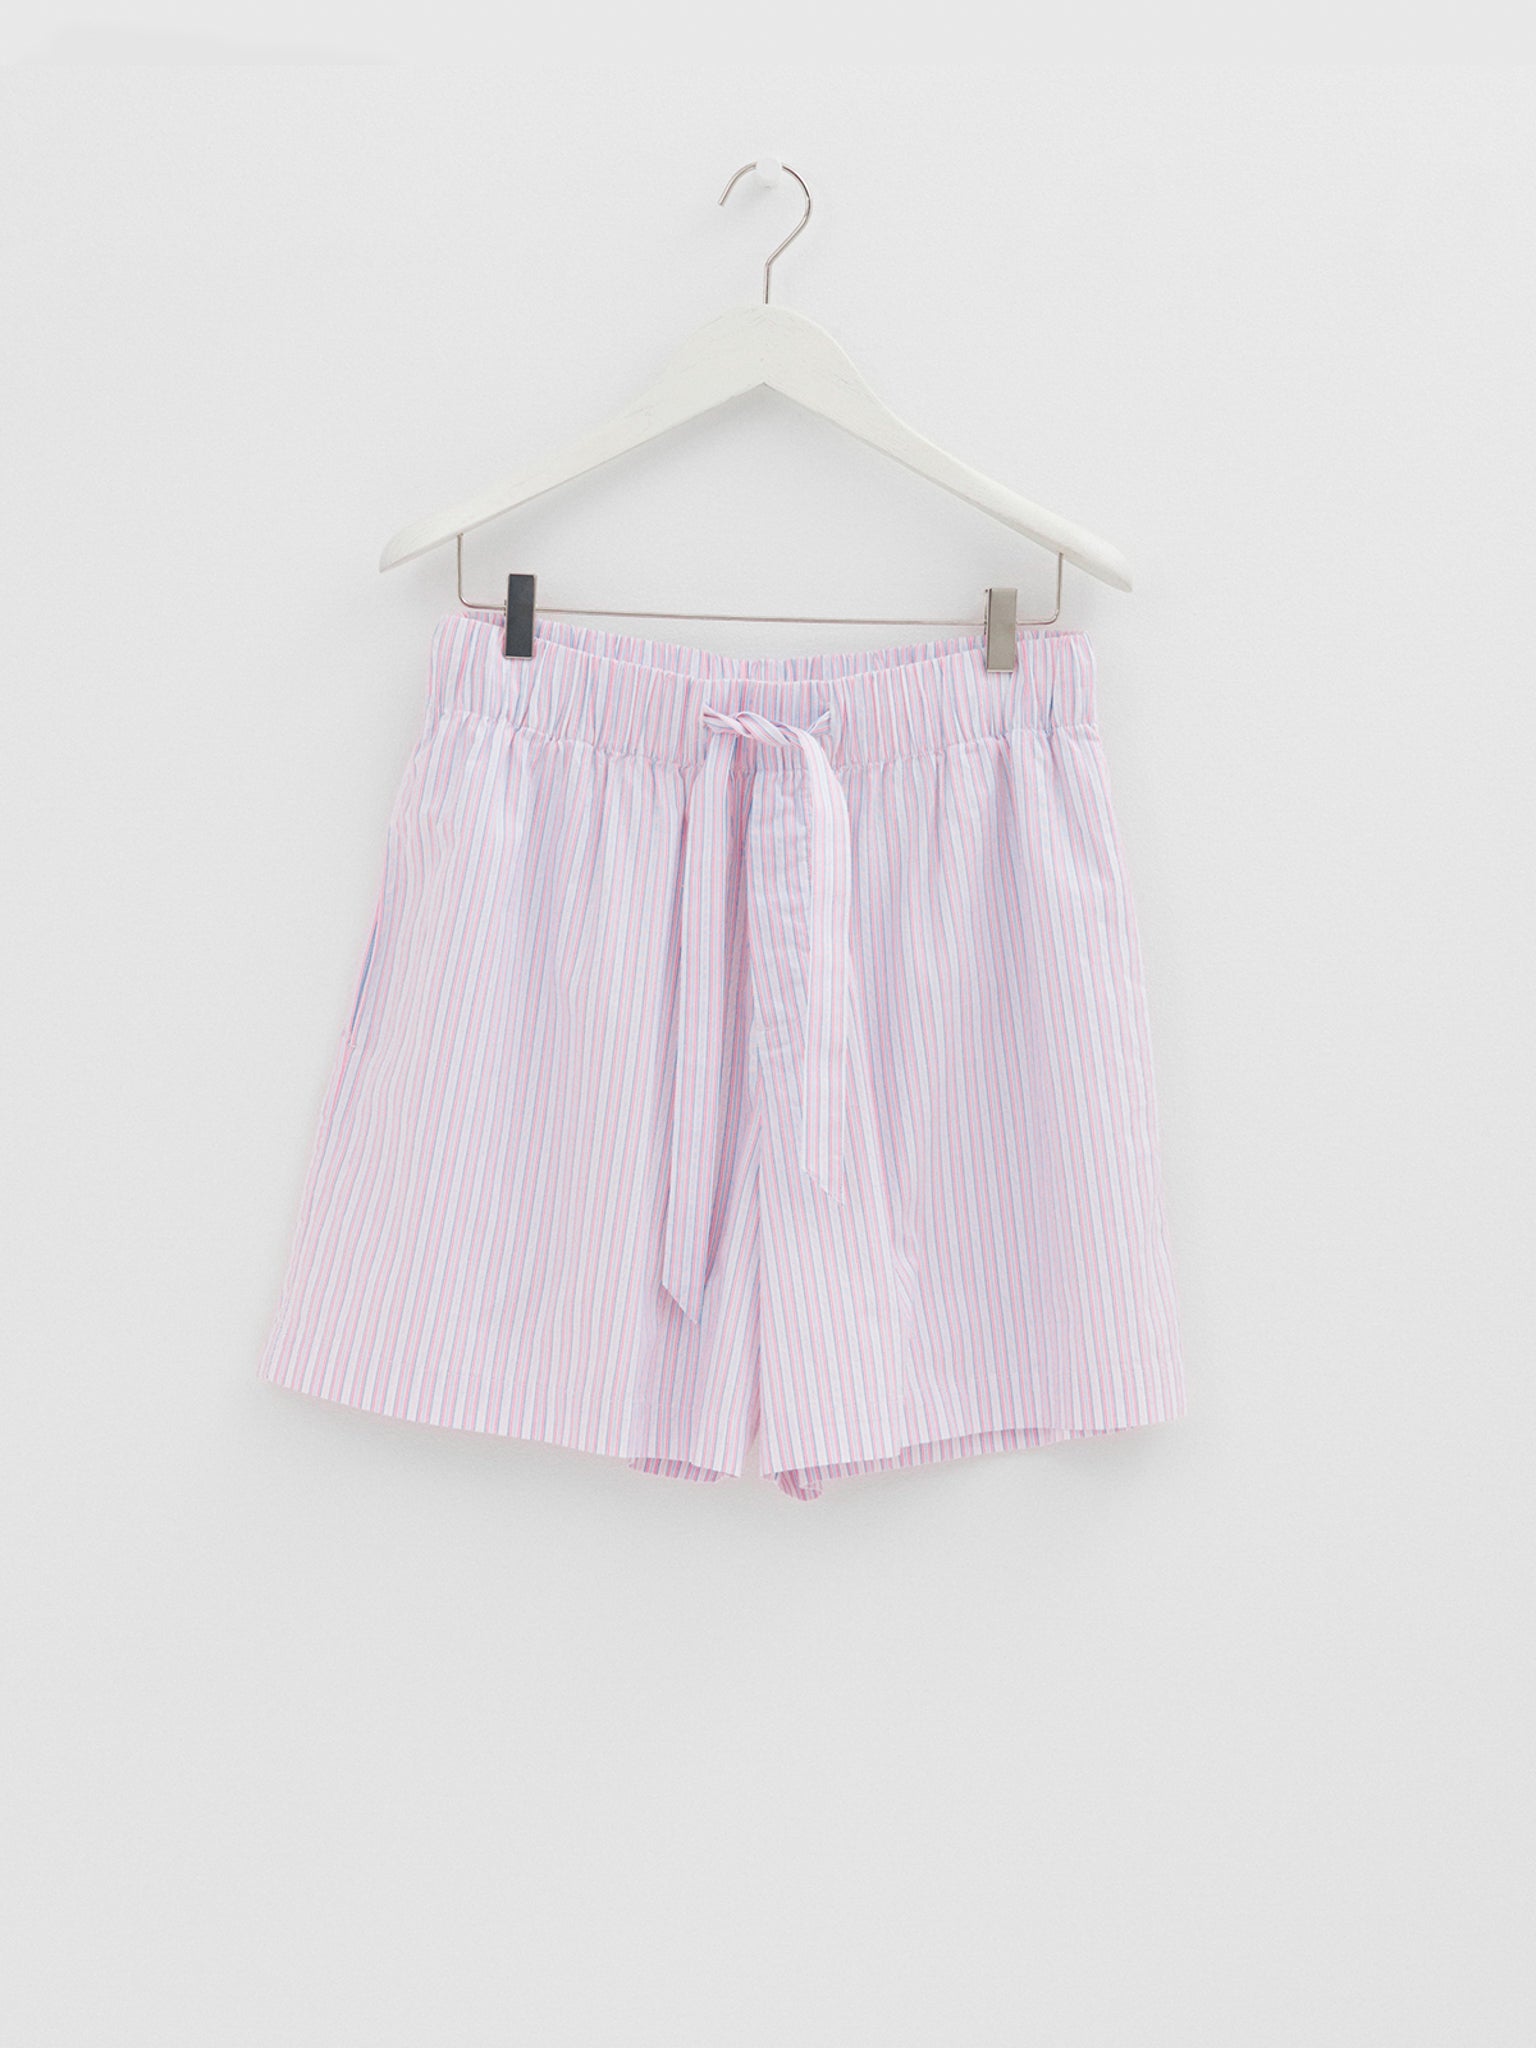 Tekla - Poplin Pyjamas Shorts in Capri Stripes